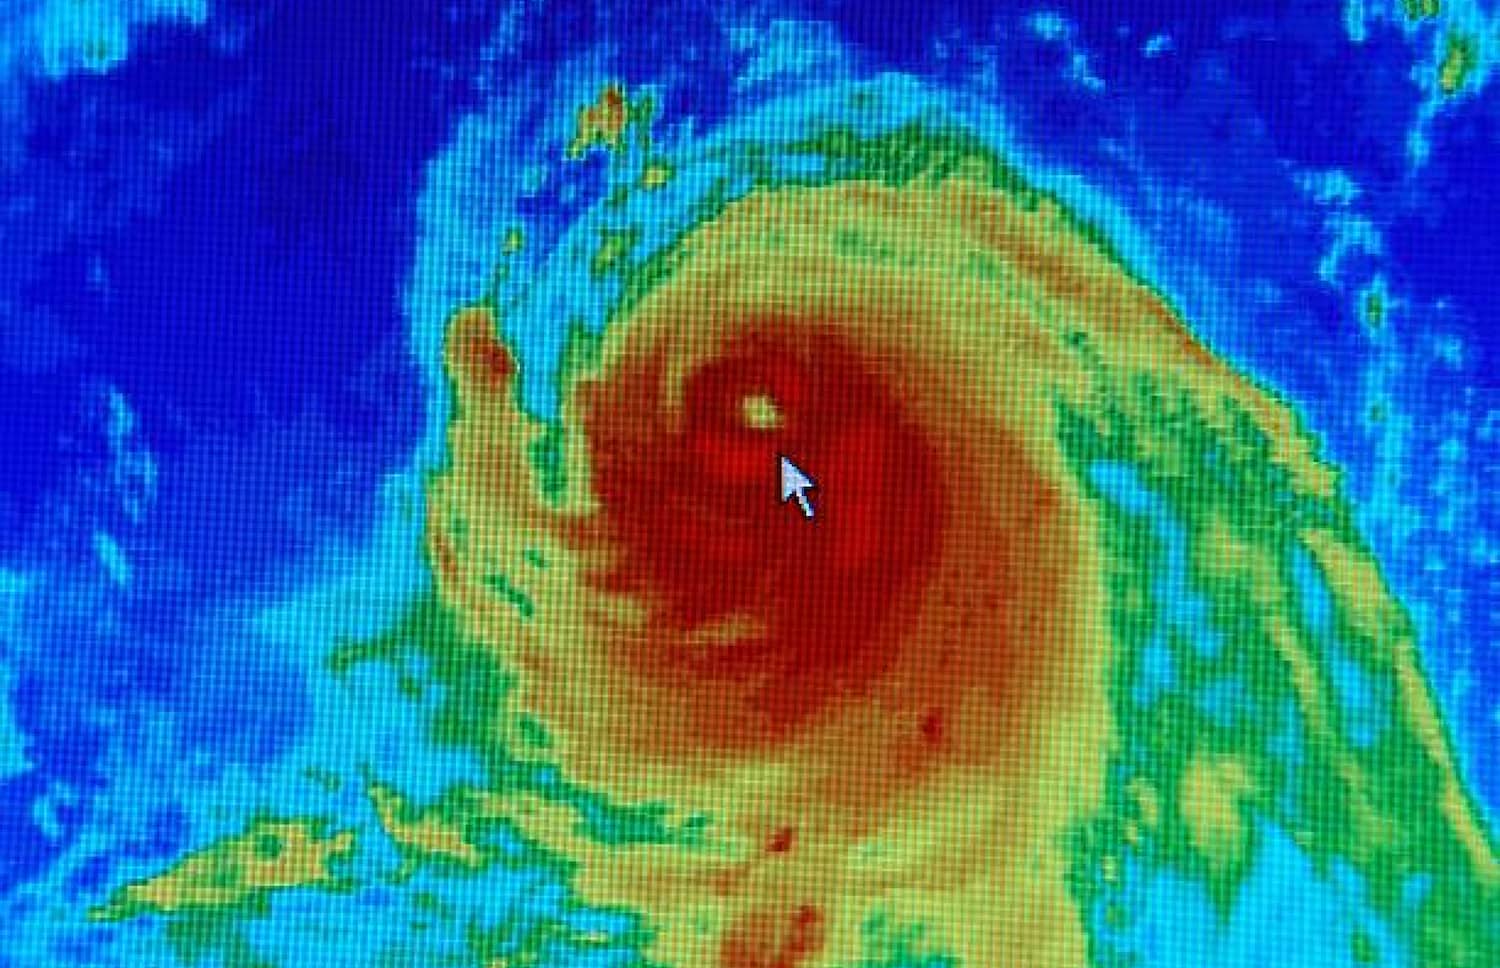 Hurricane seen through radar